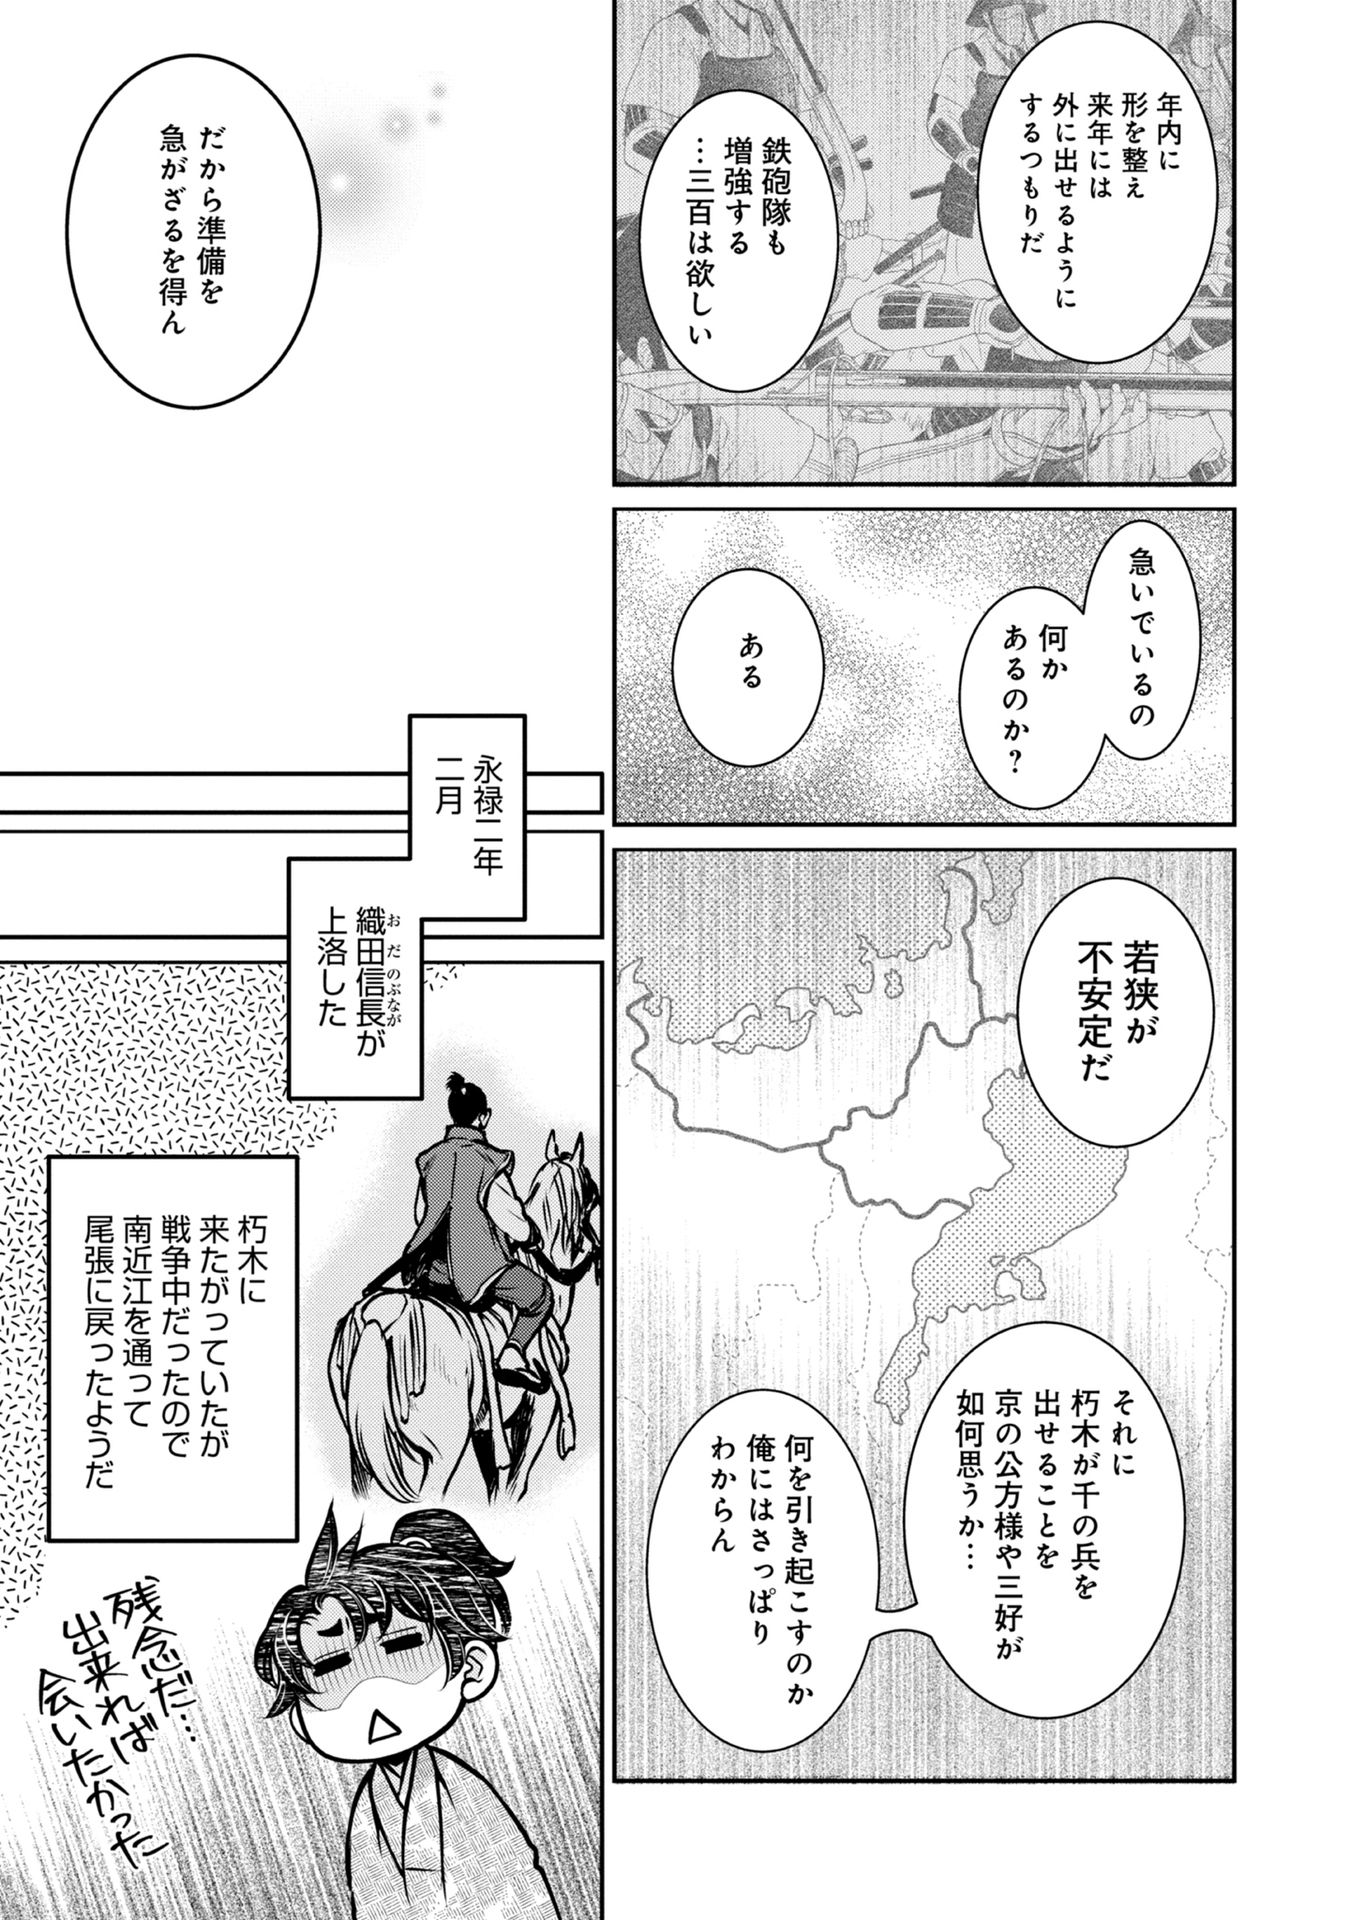 Afumi no Umi – Minamo ga Yureru Toki - Chapter 6 - Page 35